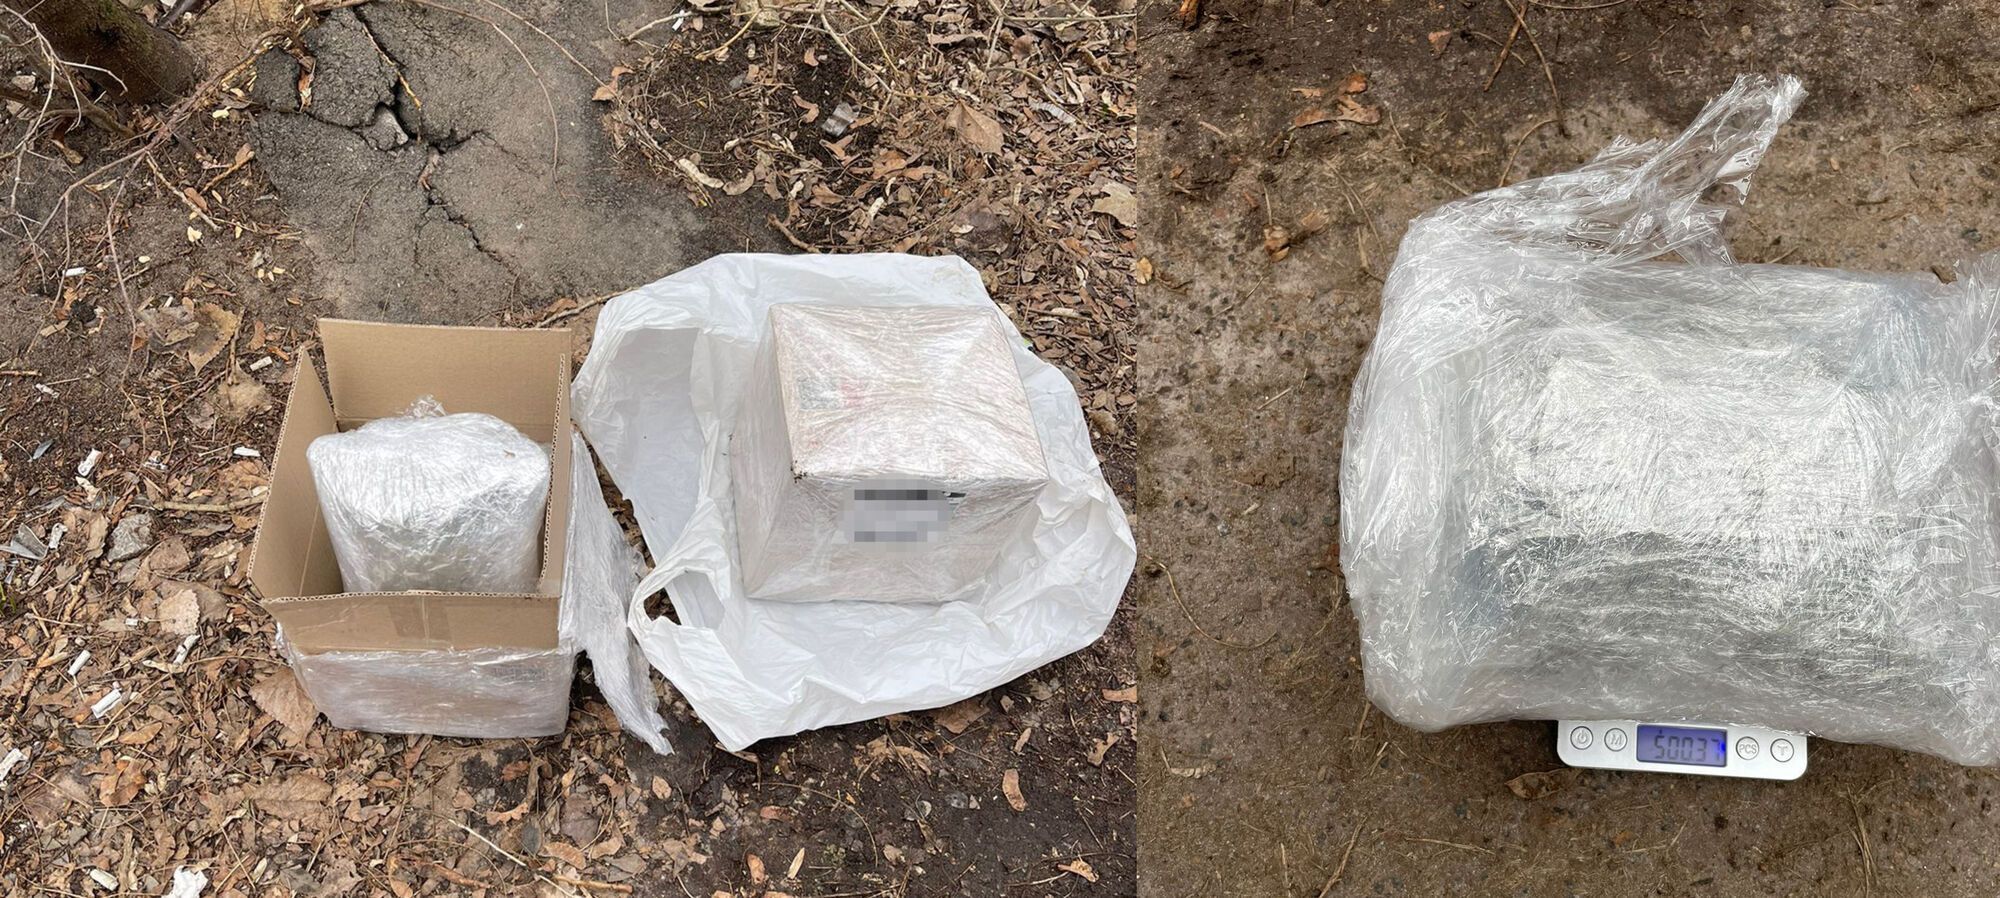 У Києві затримали чоловіка, який за допомогою пошти розповсюджував наркотики: у нього знайшли 2 кг "товару". Фото